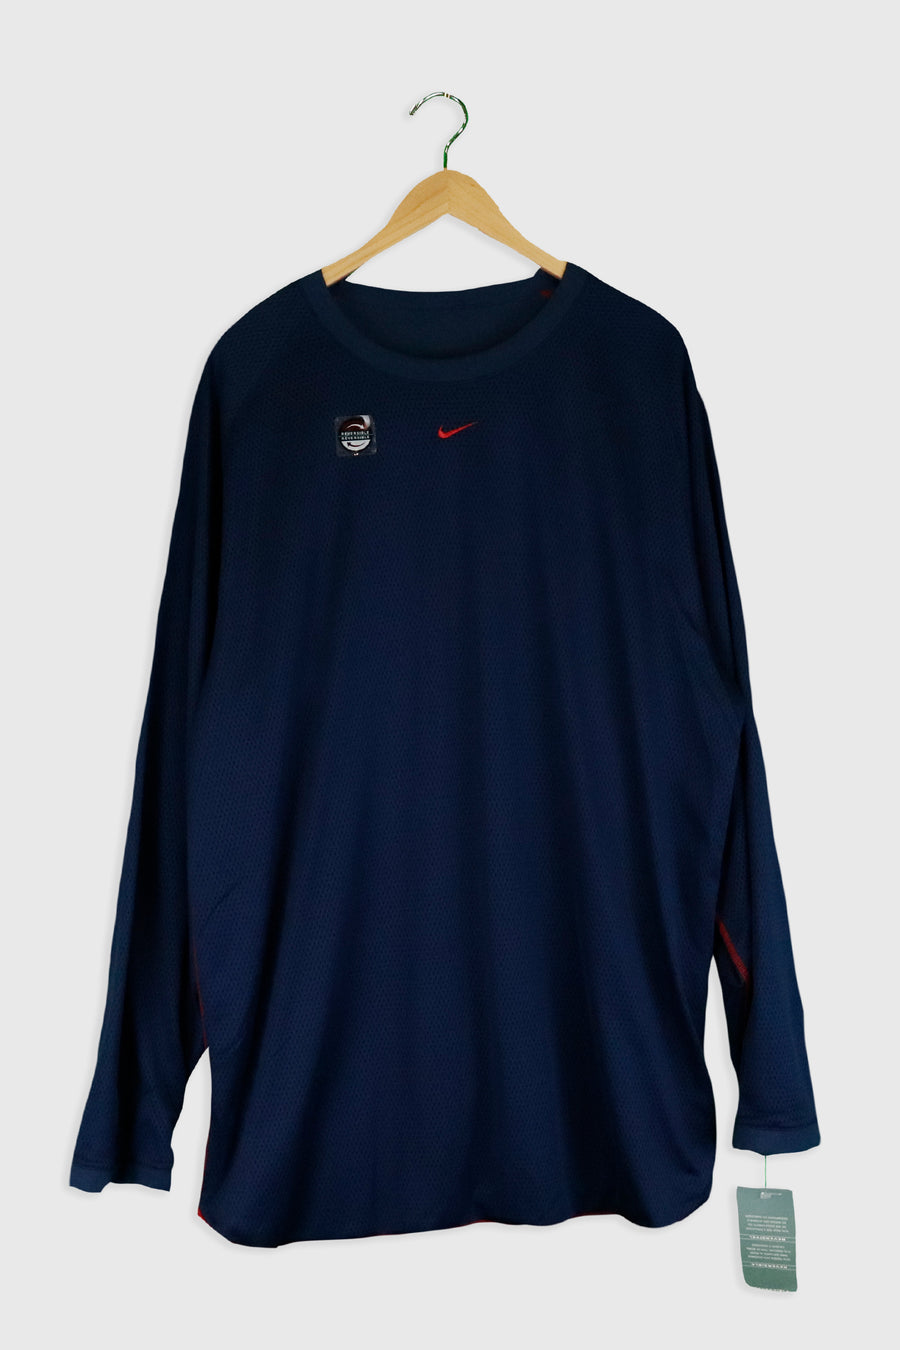 Vintage Nike Football Reversable Jersey Sz XL